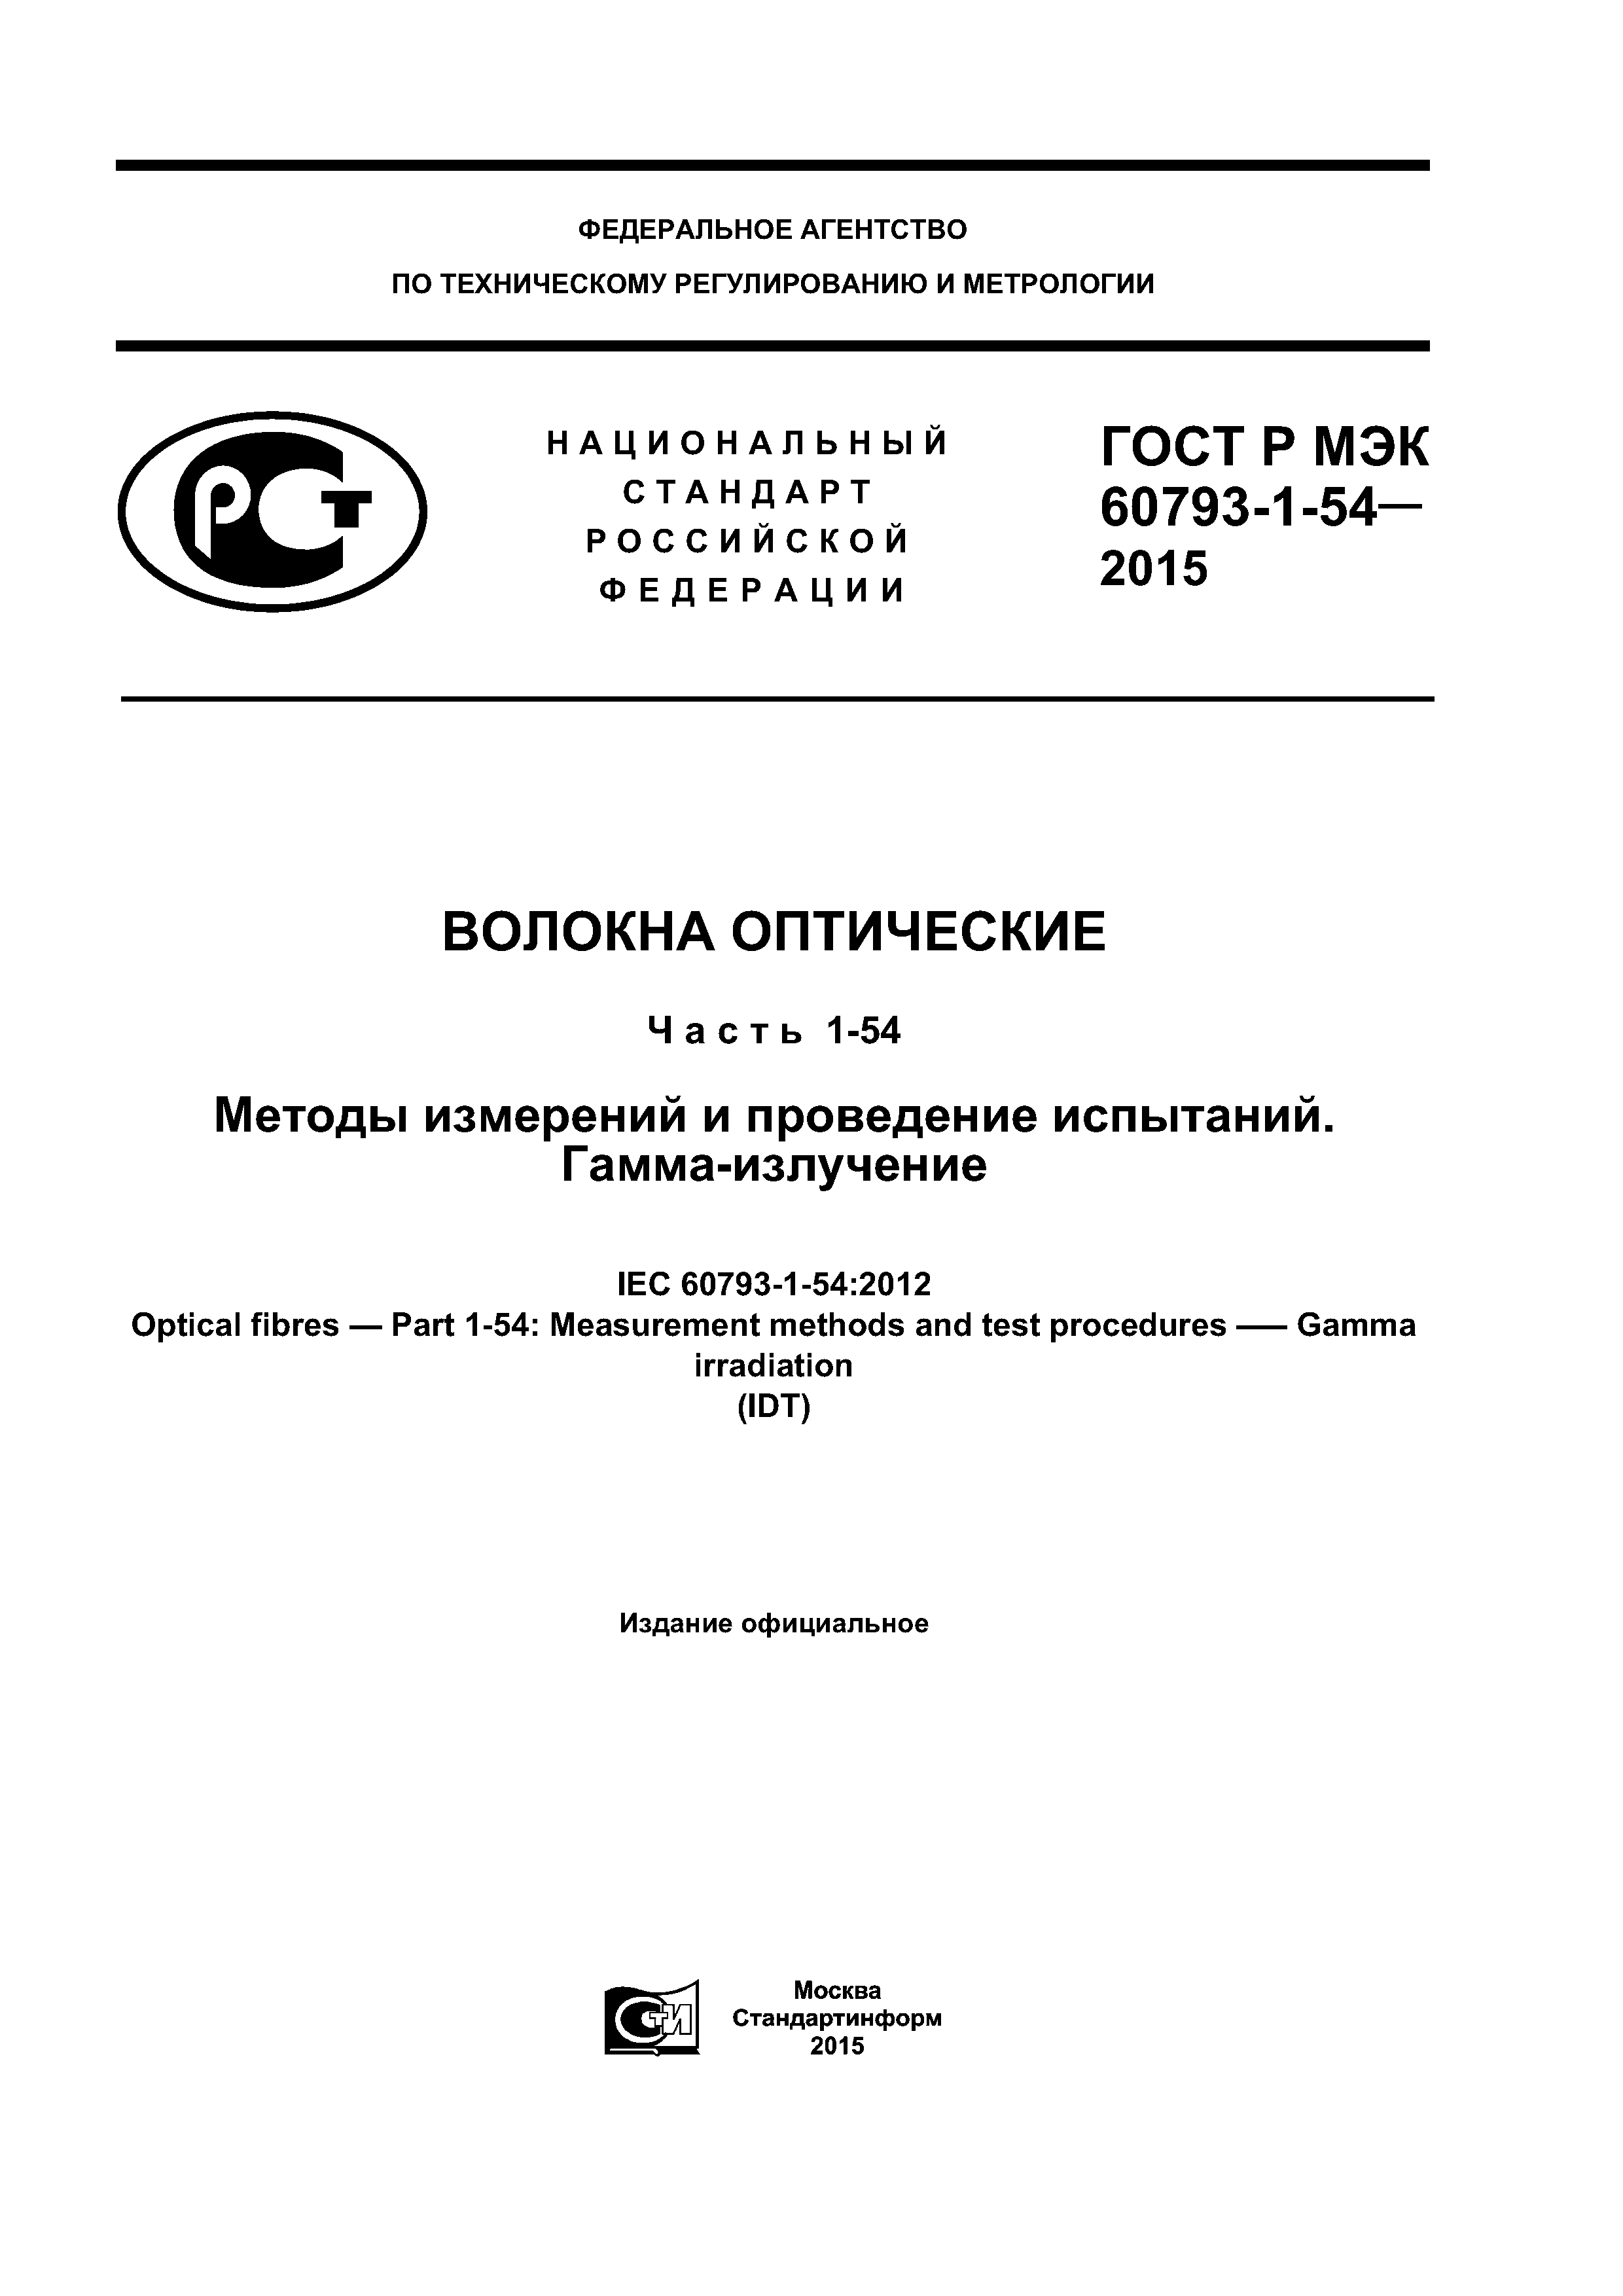 ГОСТ Р МЭК 60793-1-54-2015